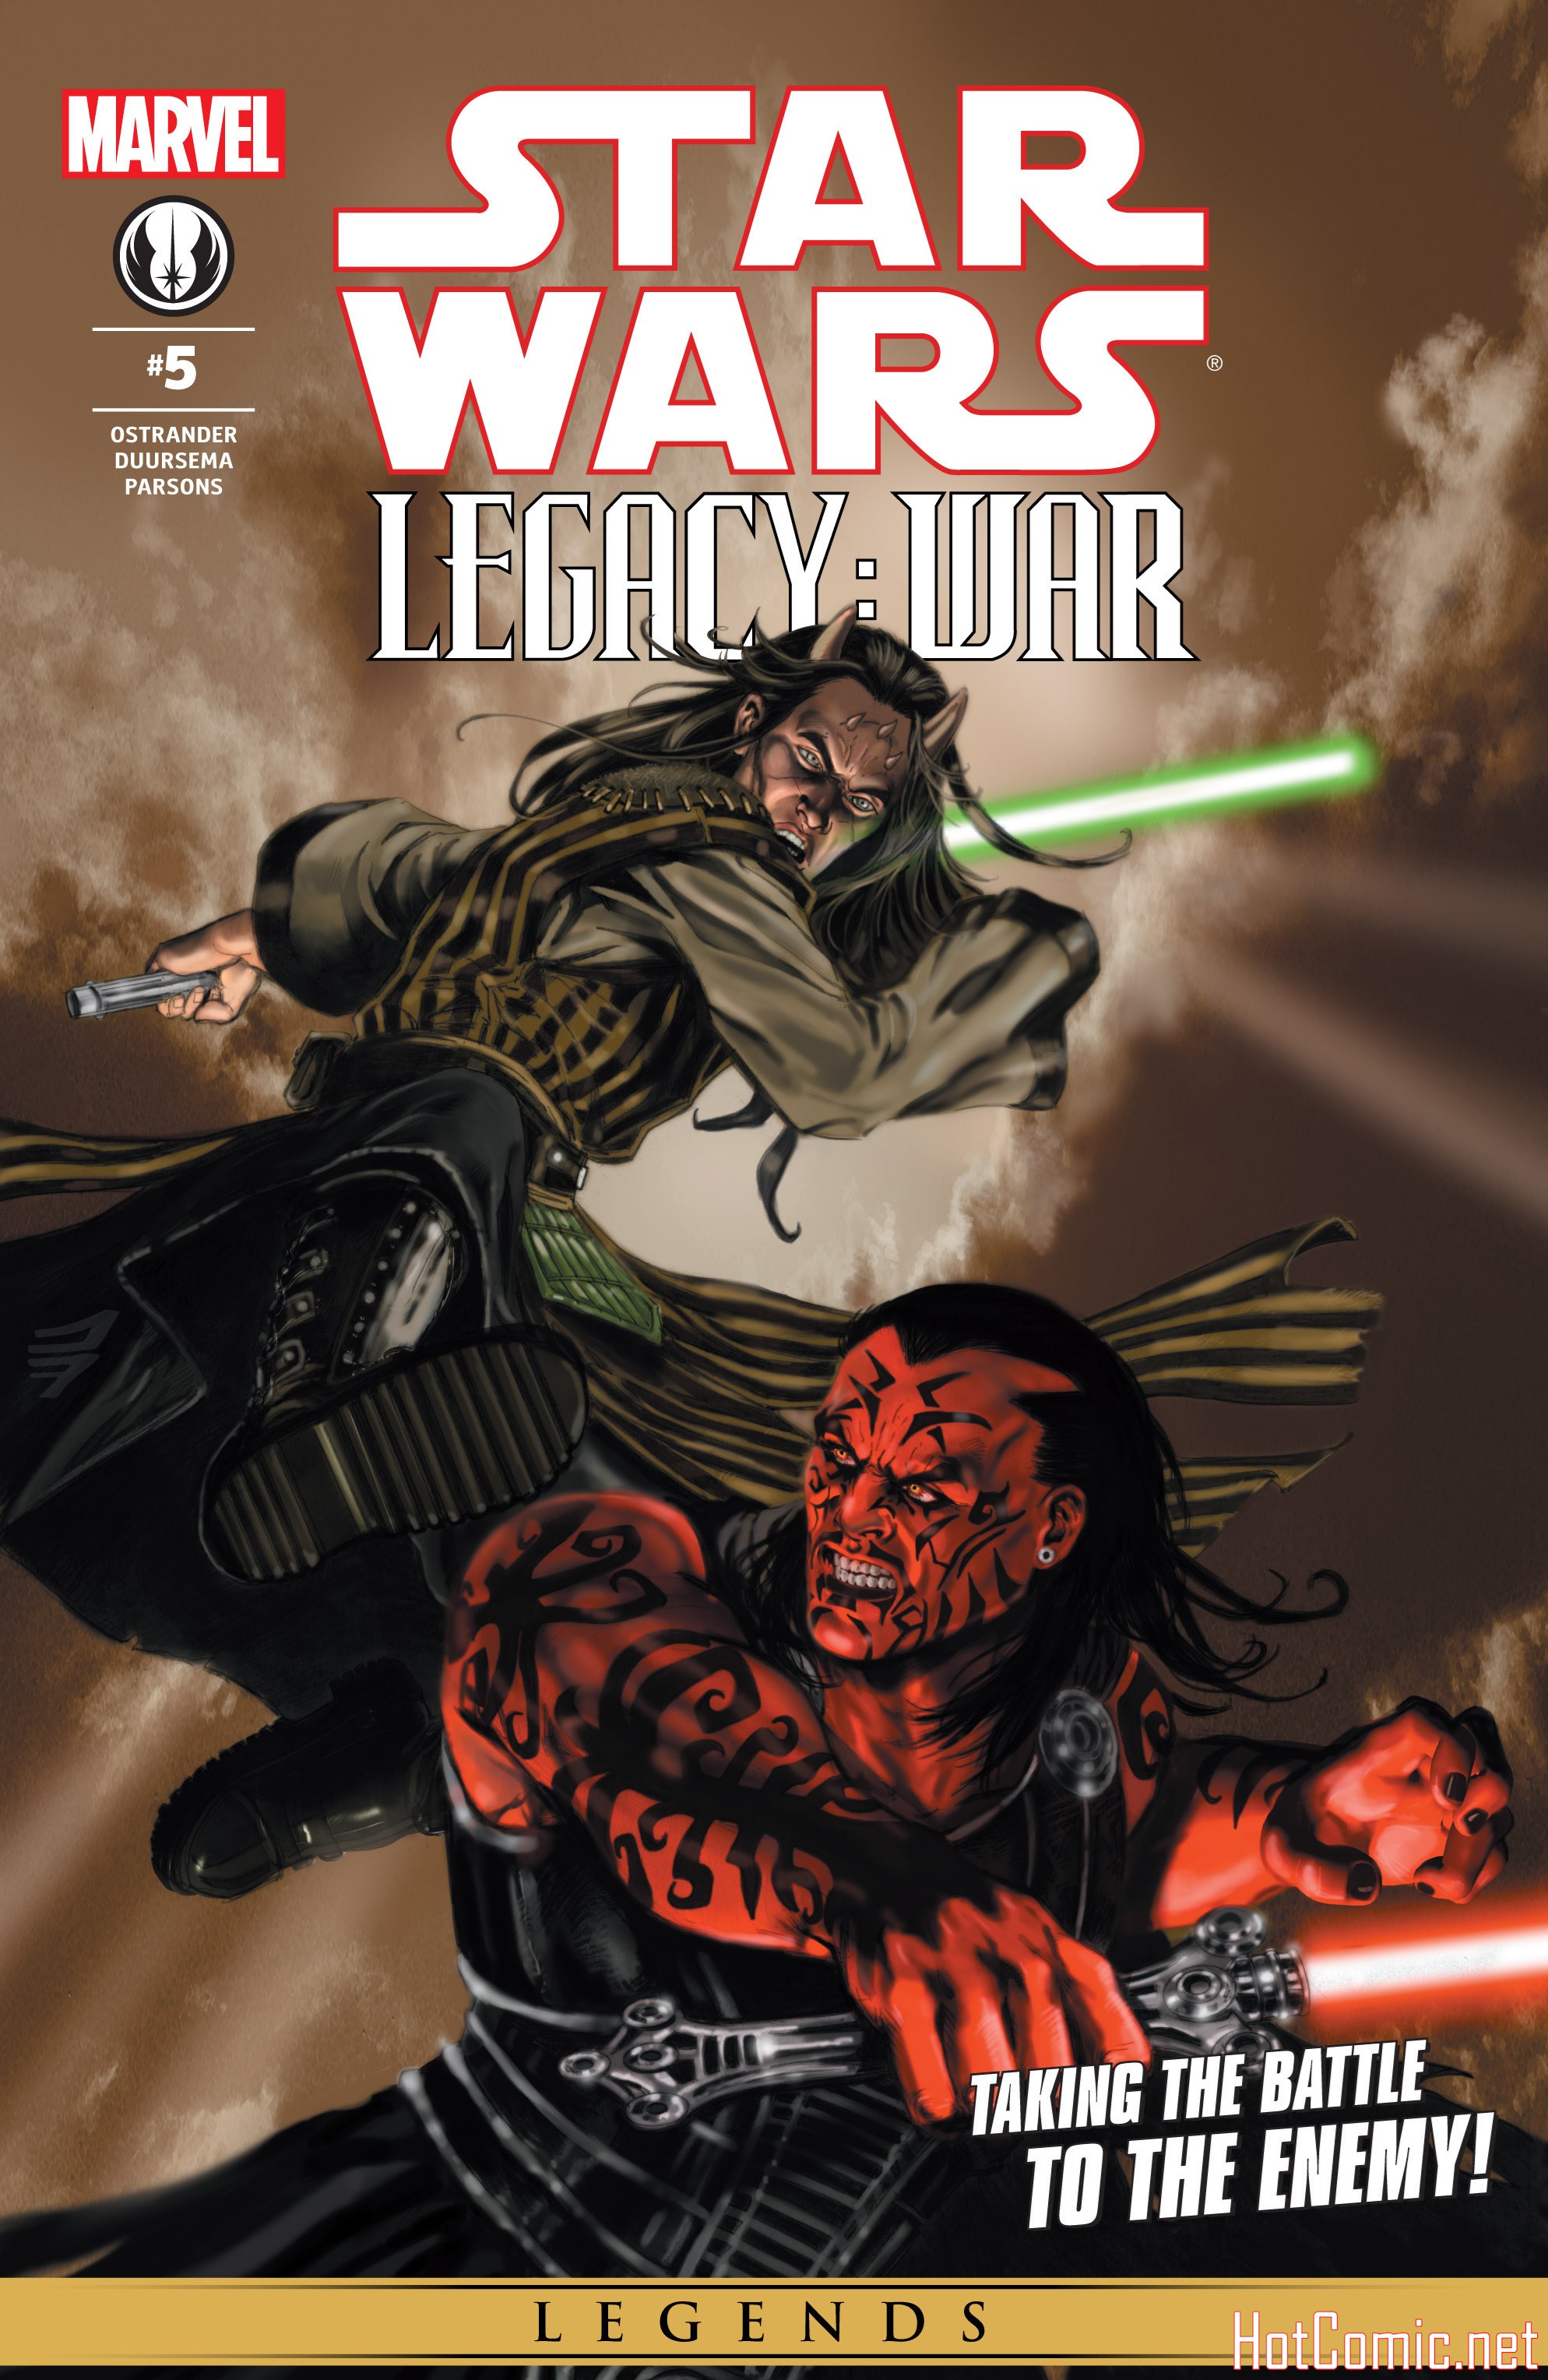 Star Wars: Legacy War Issue #5 1